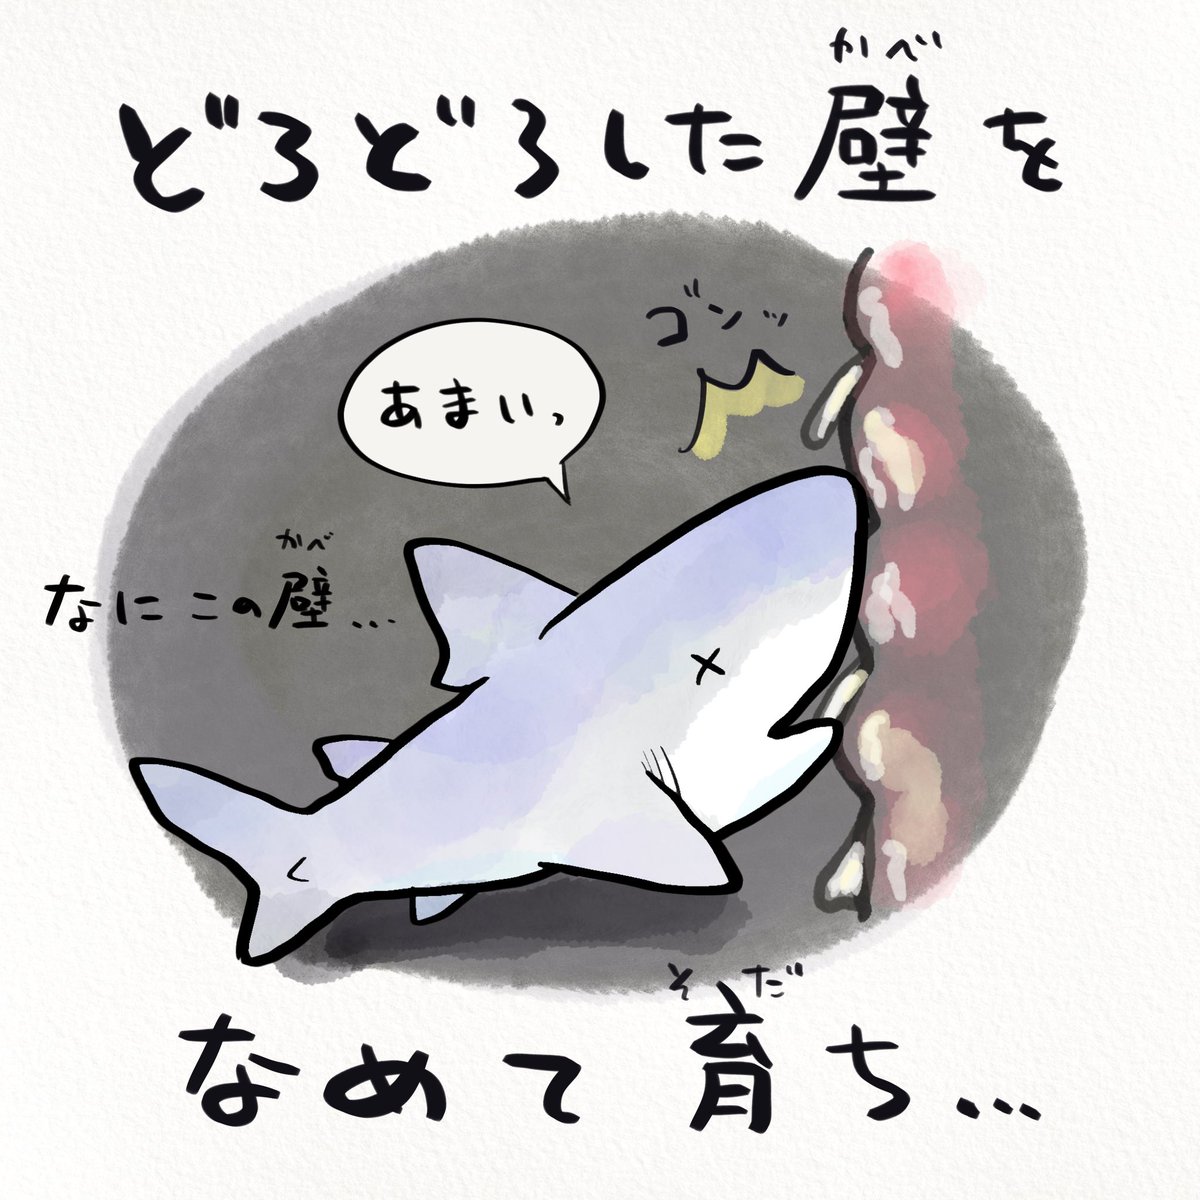 鯊魚 - 大白鯊在子宮內的生活 EcZHOeRU8AImPg0